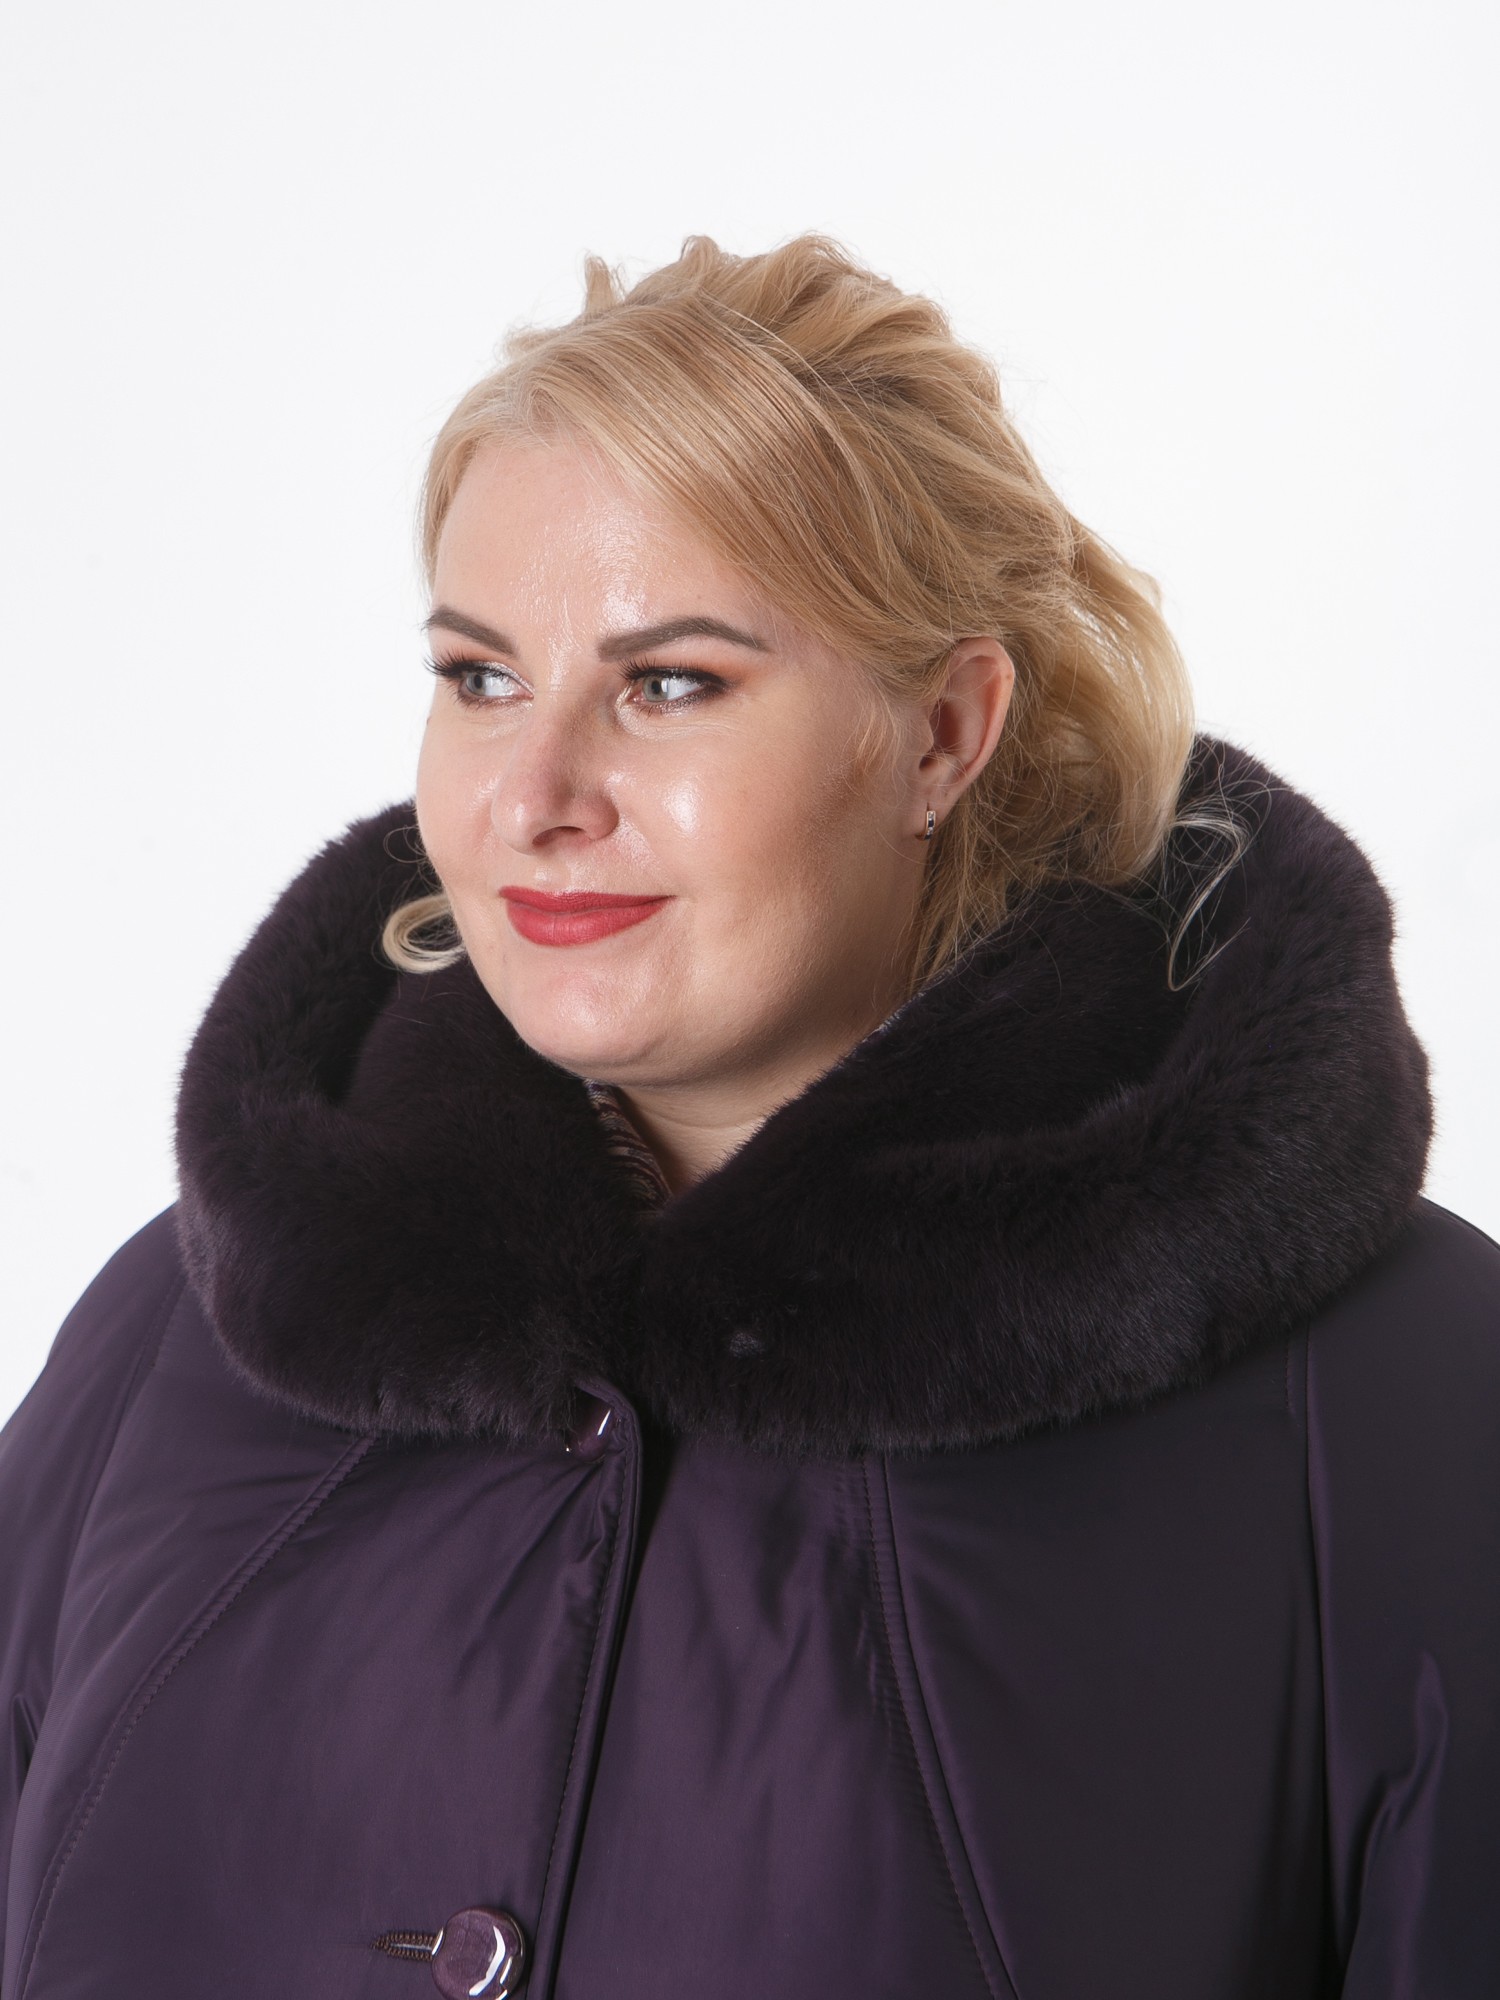 Зимнее пальто цвета баклажан с контрастной отделочной строчкой и норкой, цвет фиолетовый в интернет-магазине Фабрики Тревери